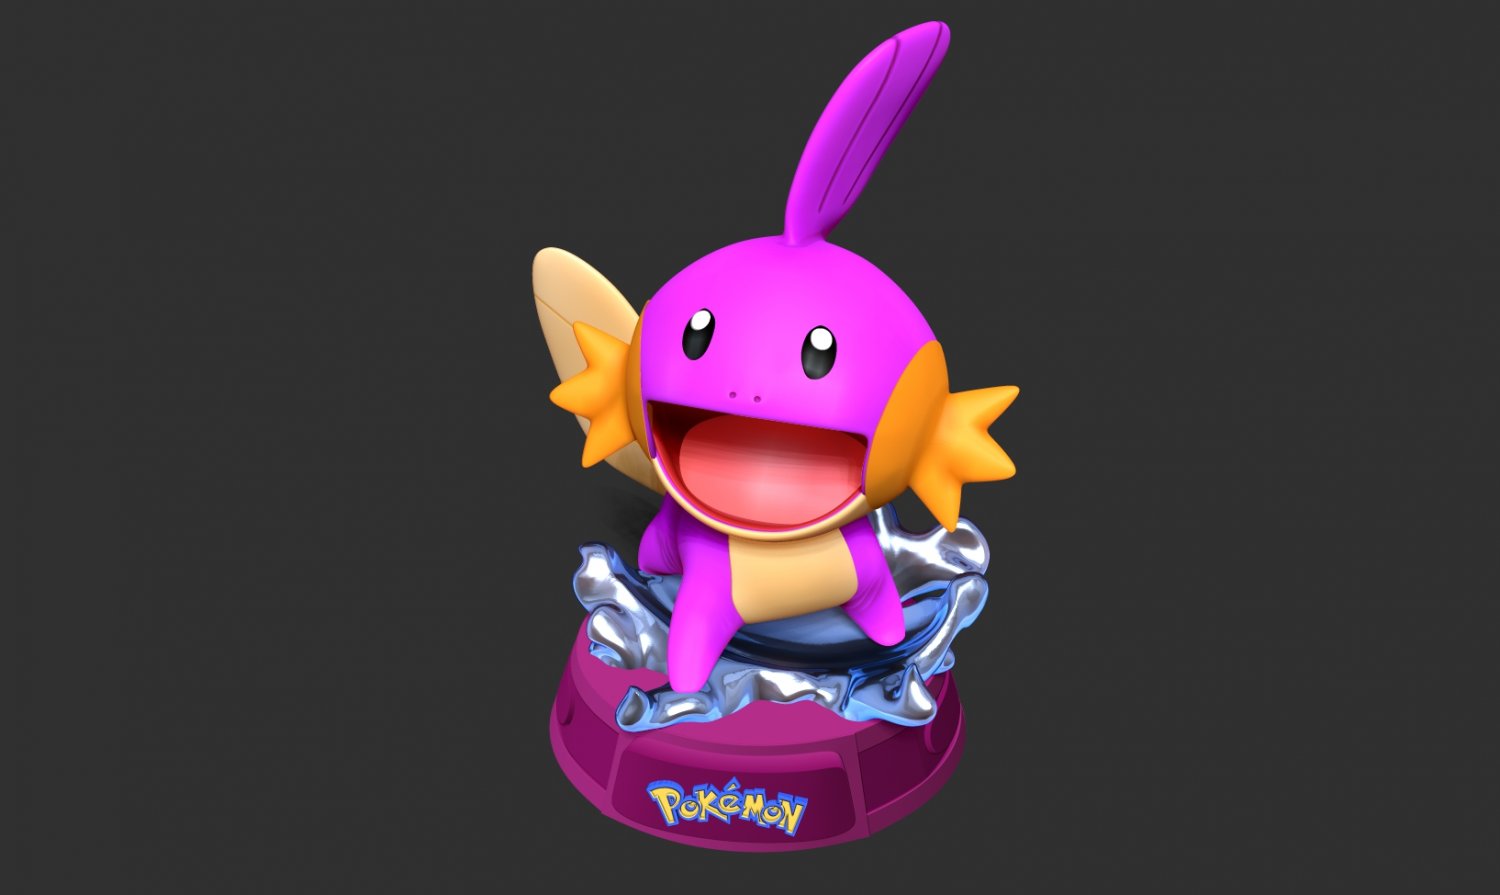 Atualização de Pokémon Go pode incluir criaturas 'Shiny